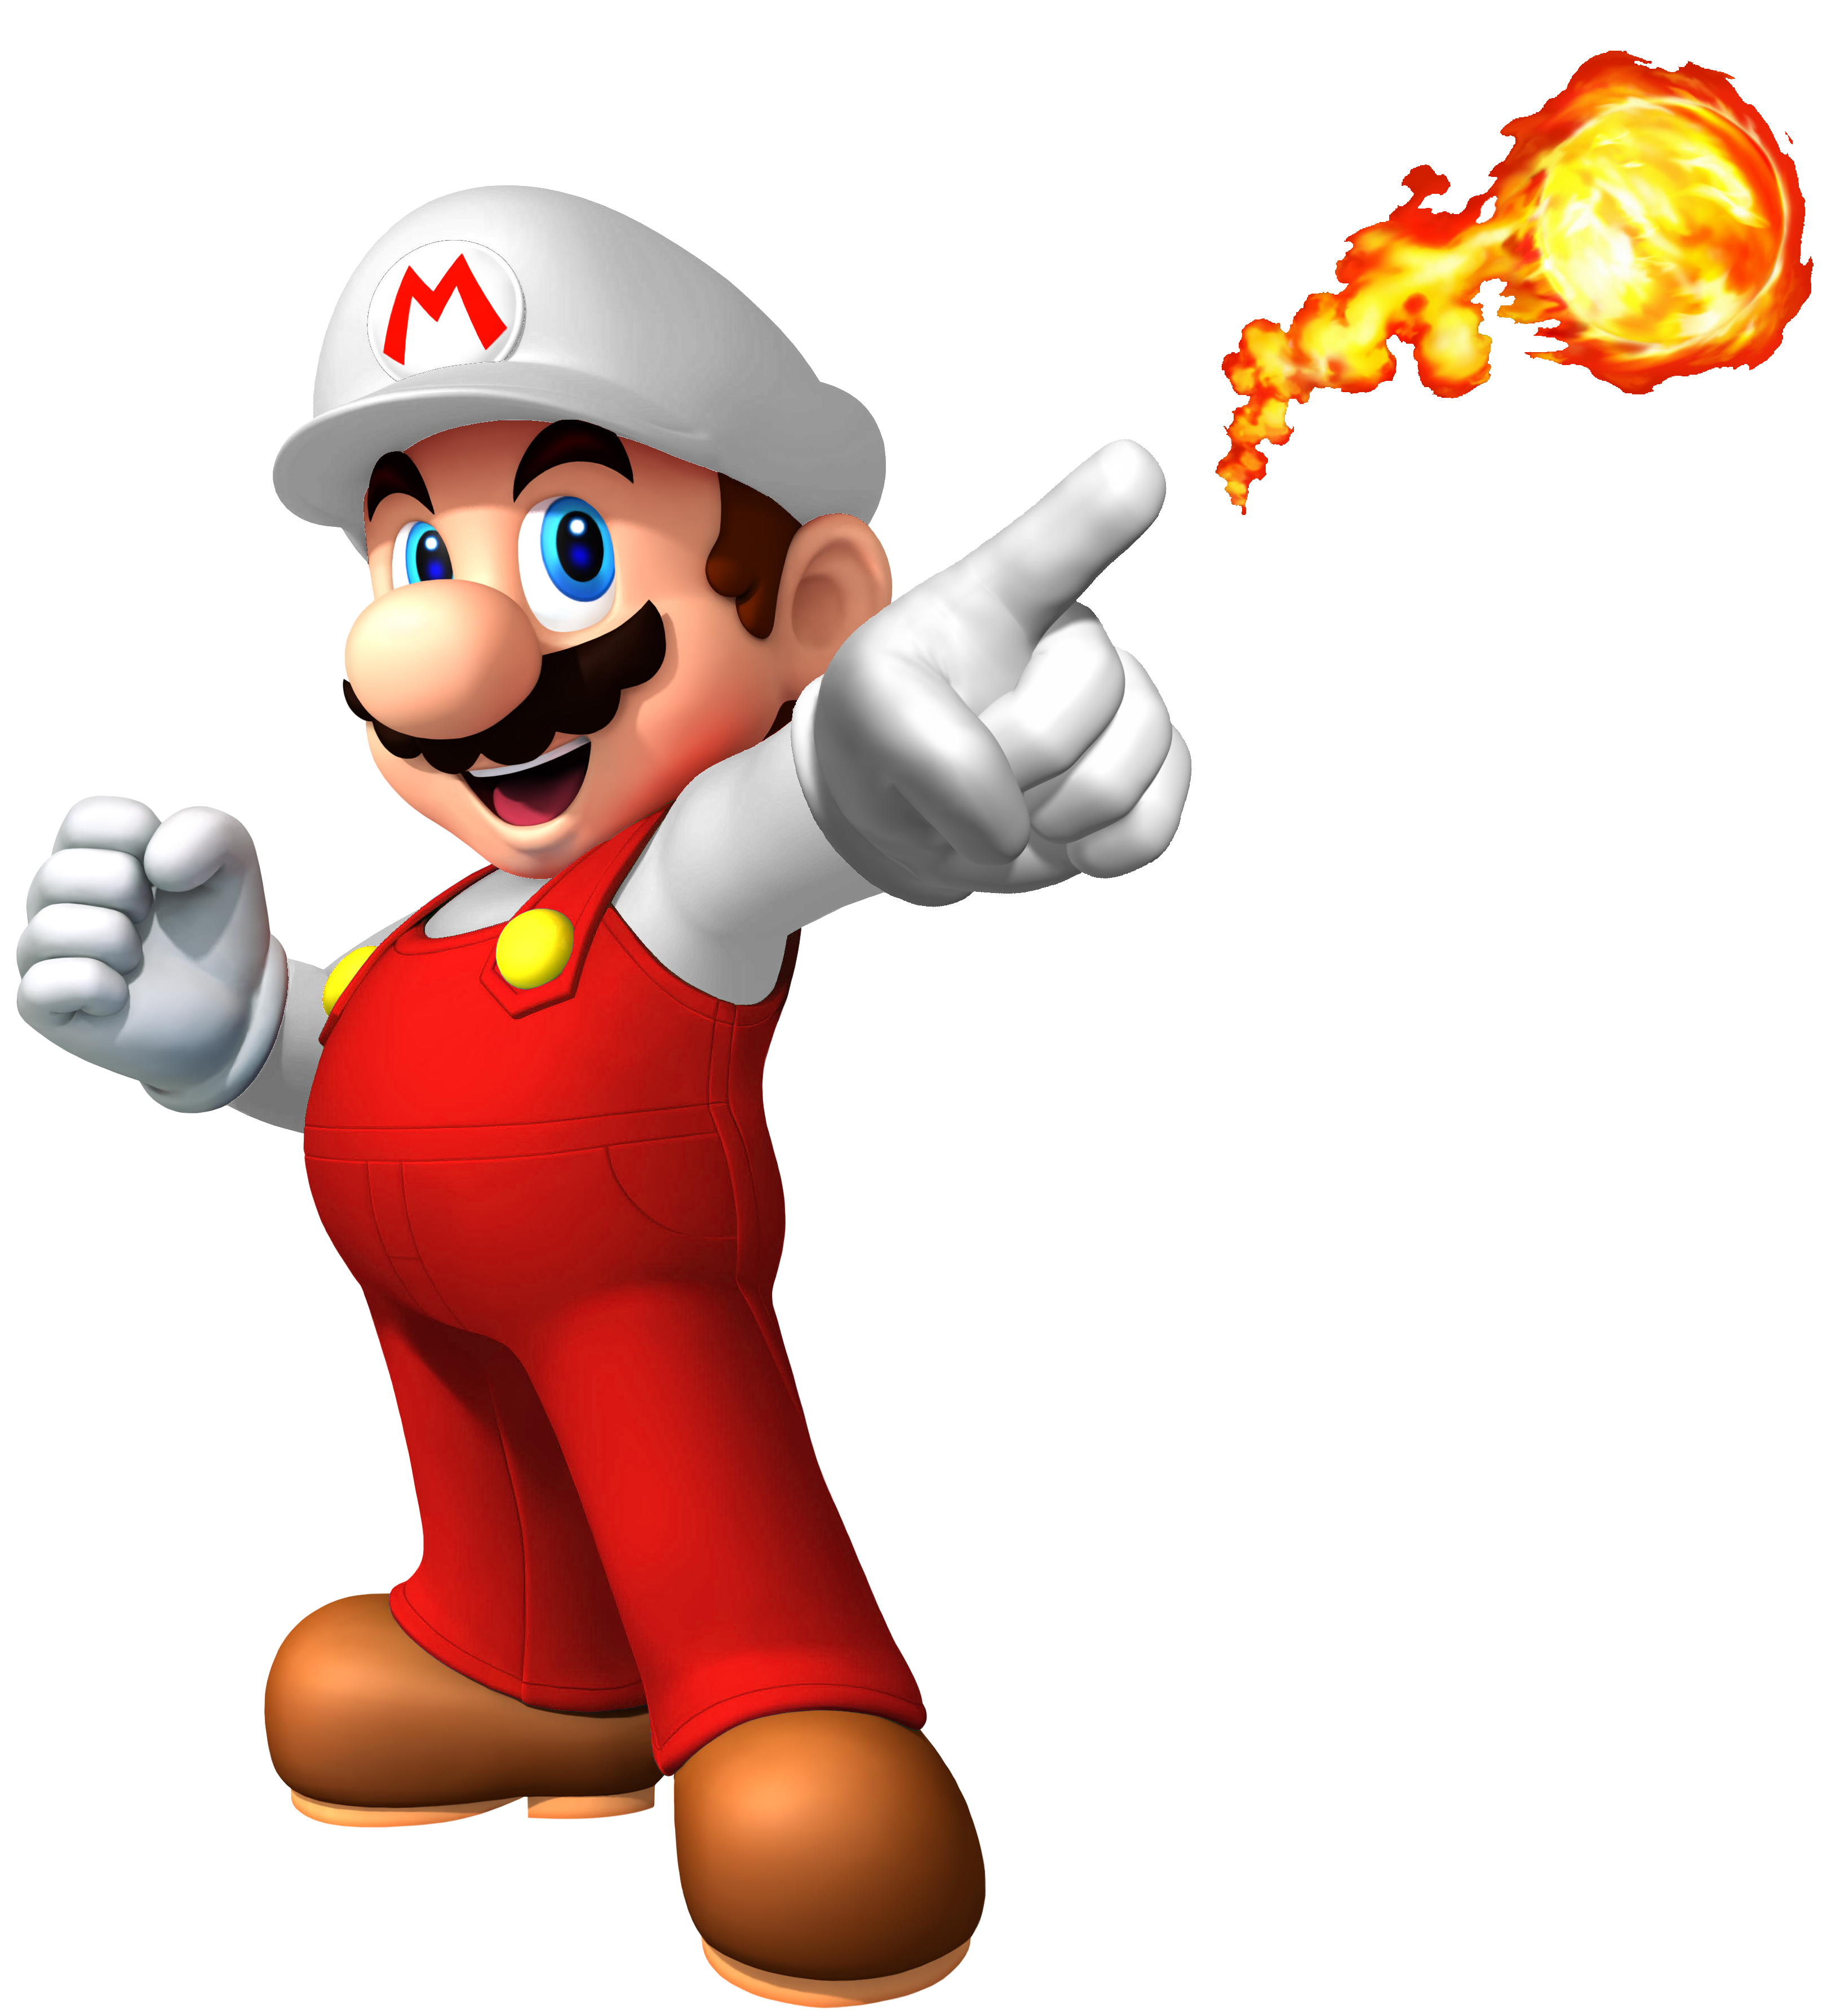 Super Mario Fire